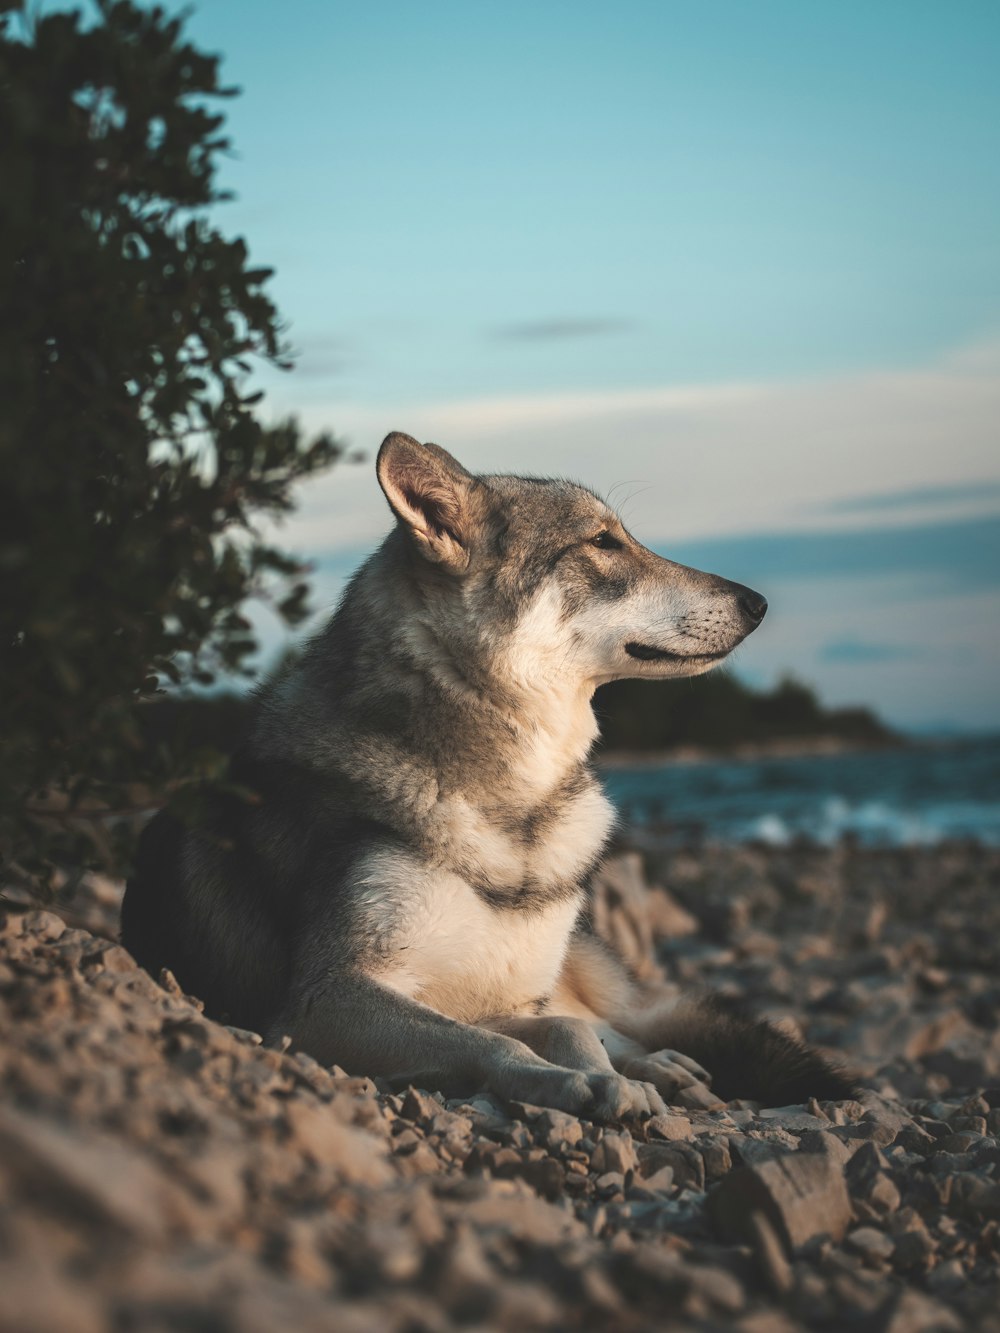 a dog sitting on a rock